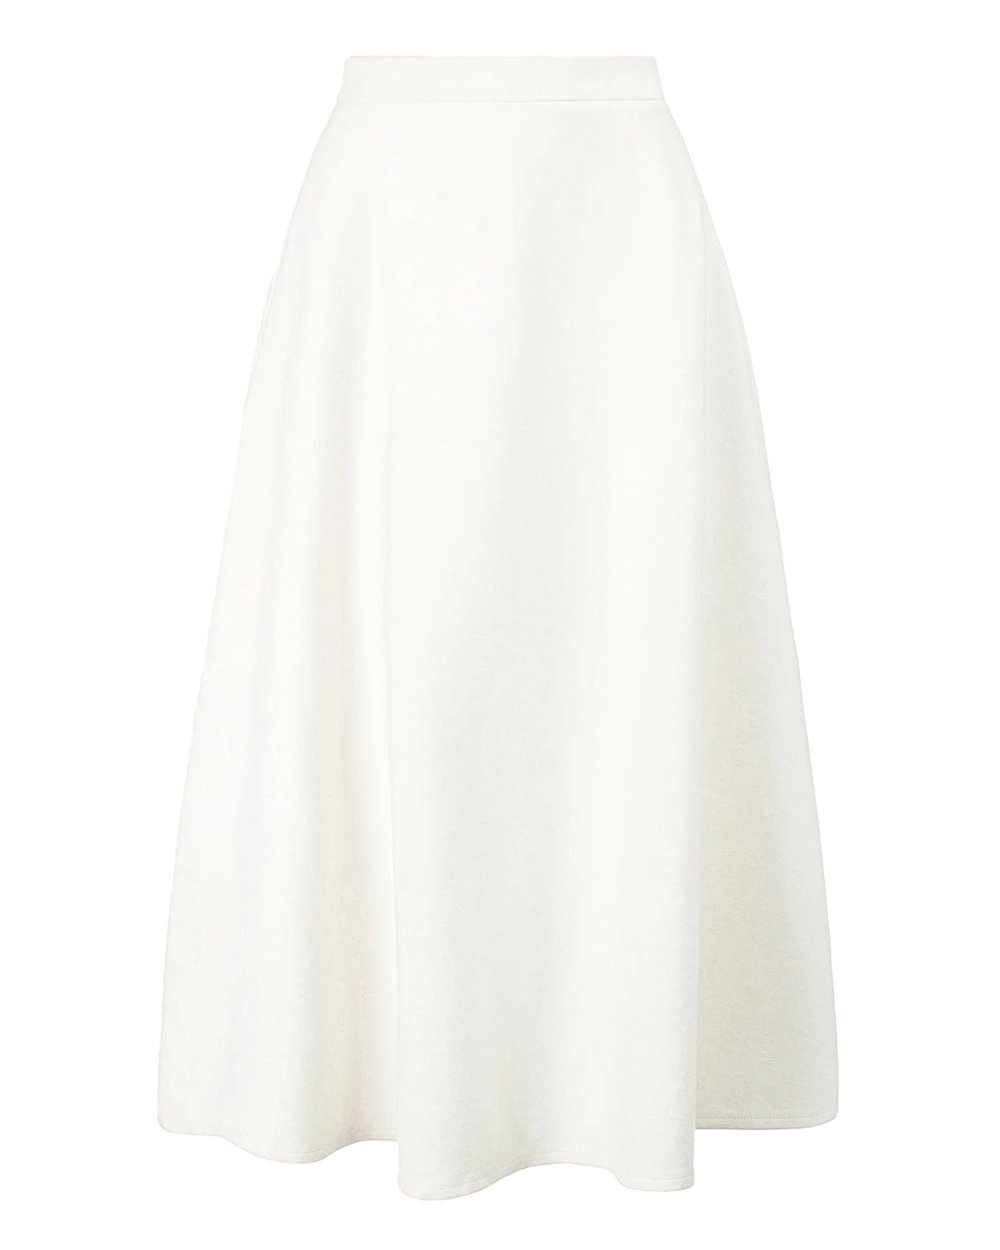 Ivory Lighthouse Skirt